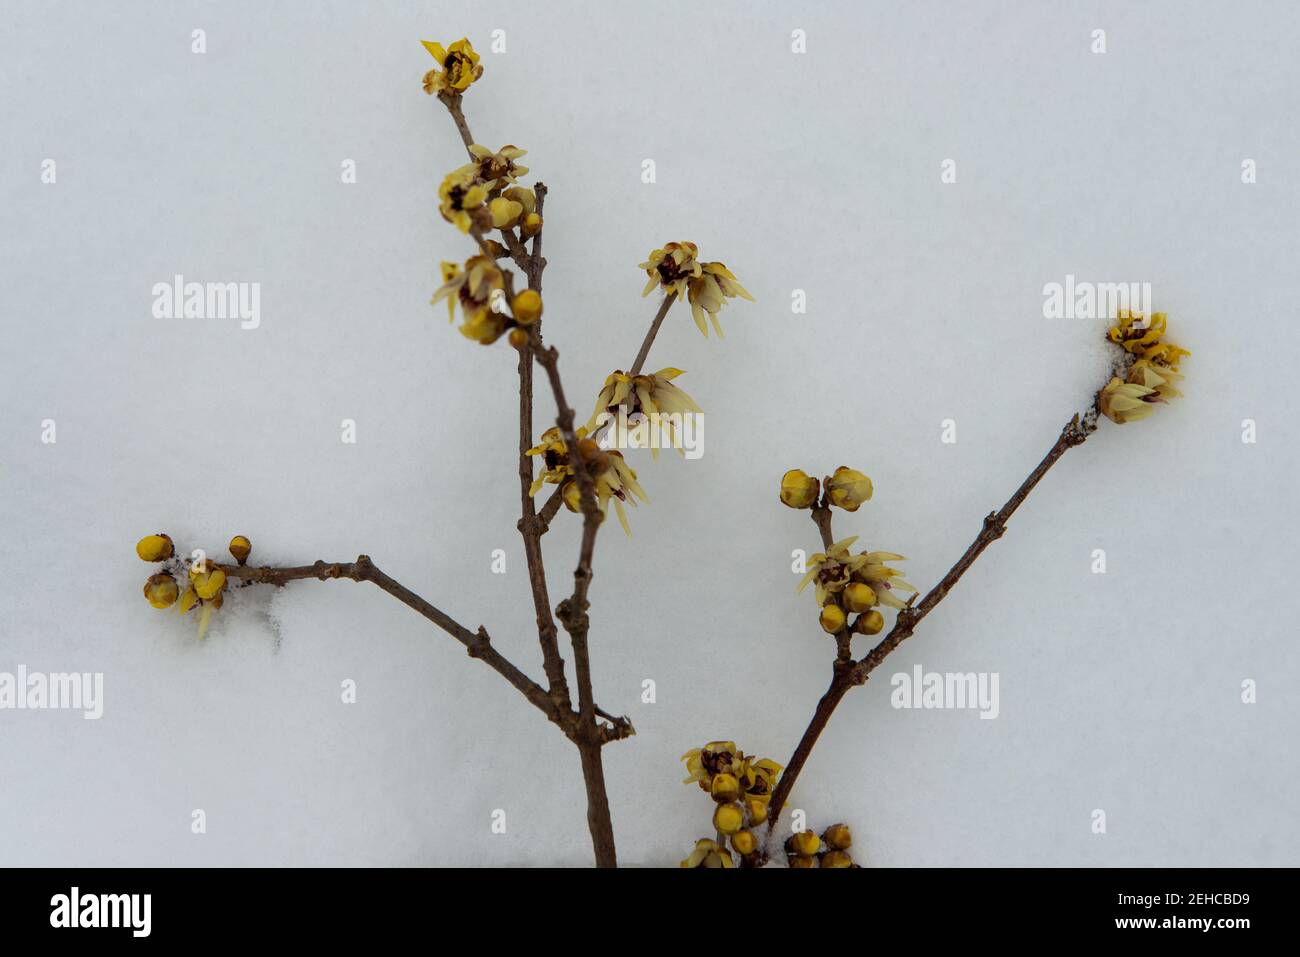 Wintersweet . Chinesische Winterblüte . Chimonanthus praecox Stock Photo